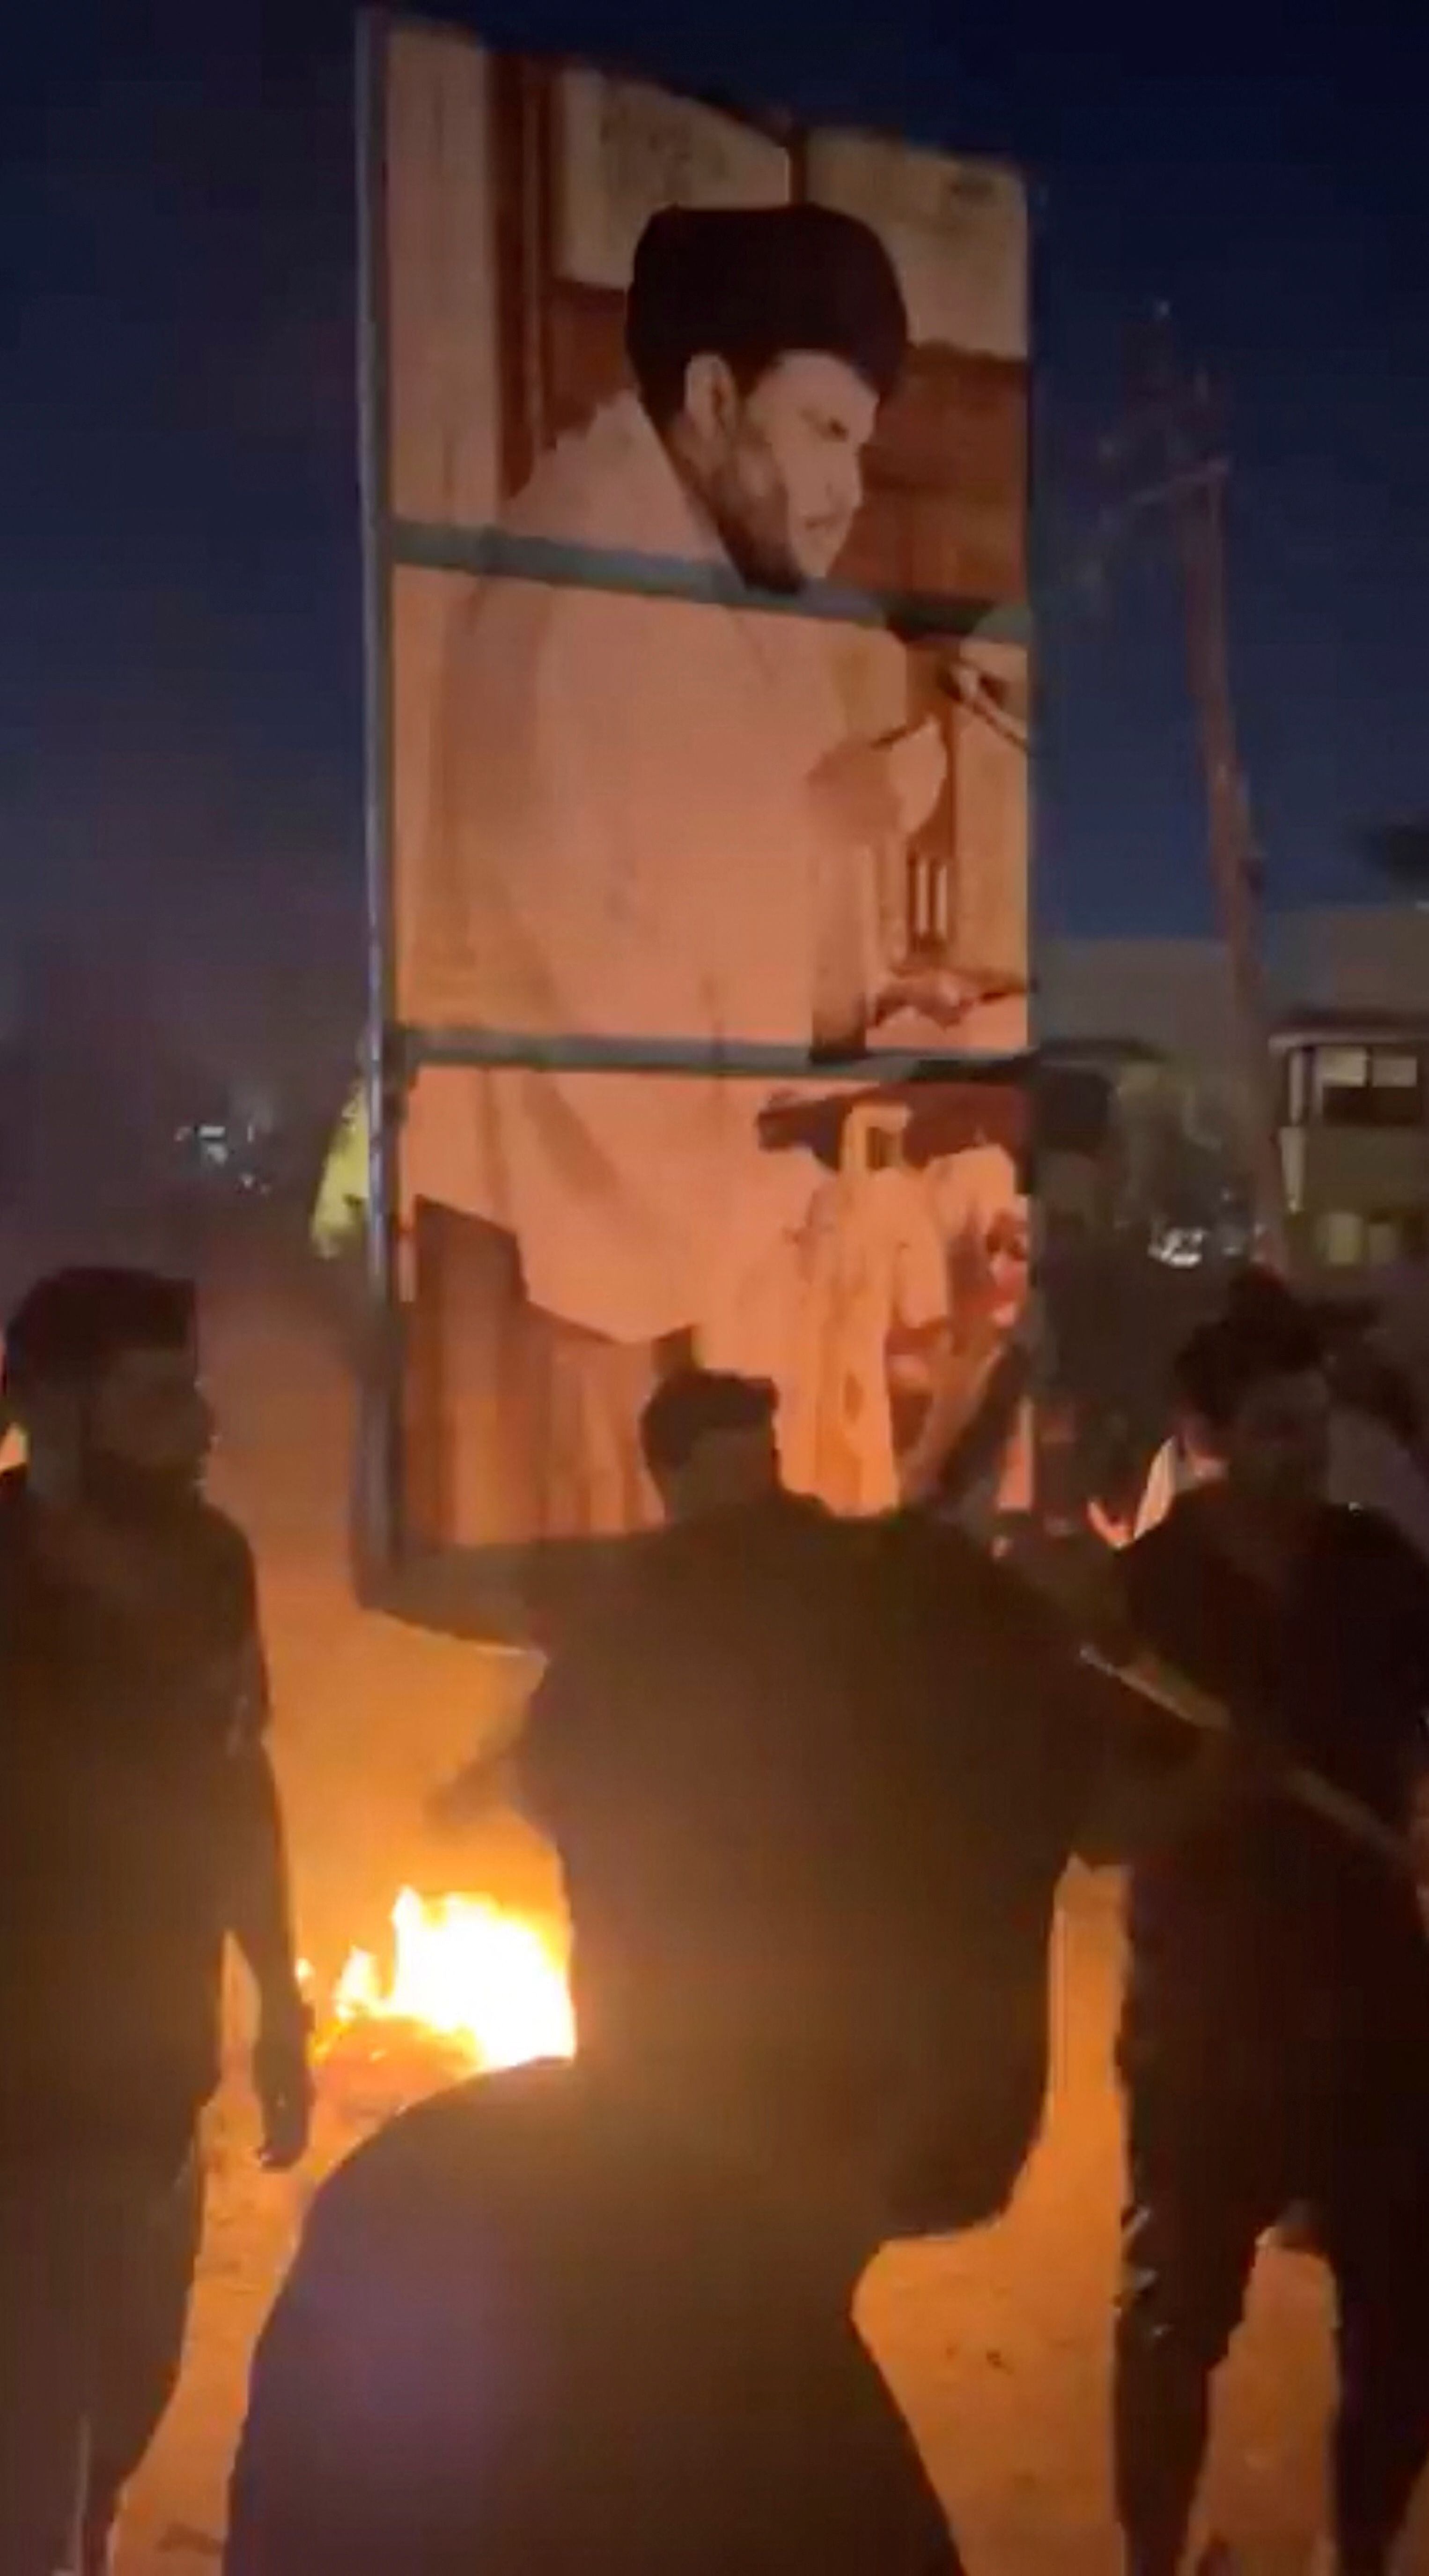 Decenas de manifestantes se agruparon alrededor de la embajada, de donde emergía una columna de humo, mientras policías antidisturbios se desplegaban por la zona para tratar de controlar la situación. (REUTERS)